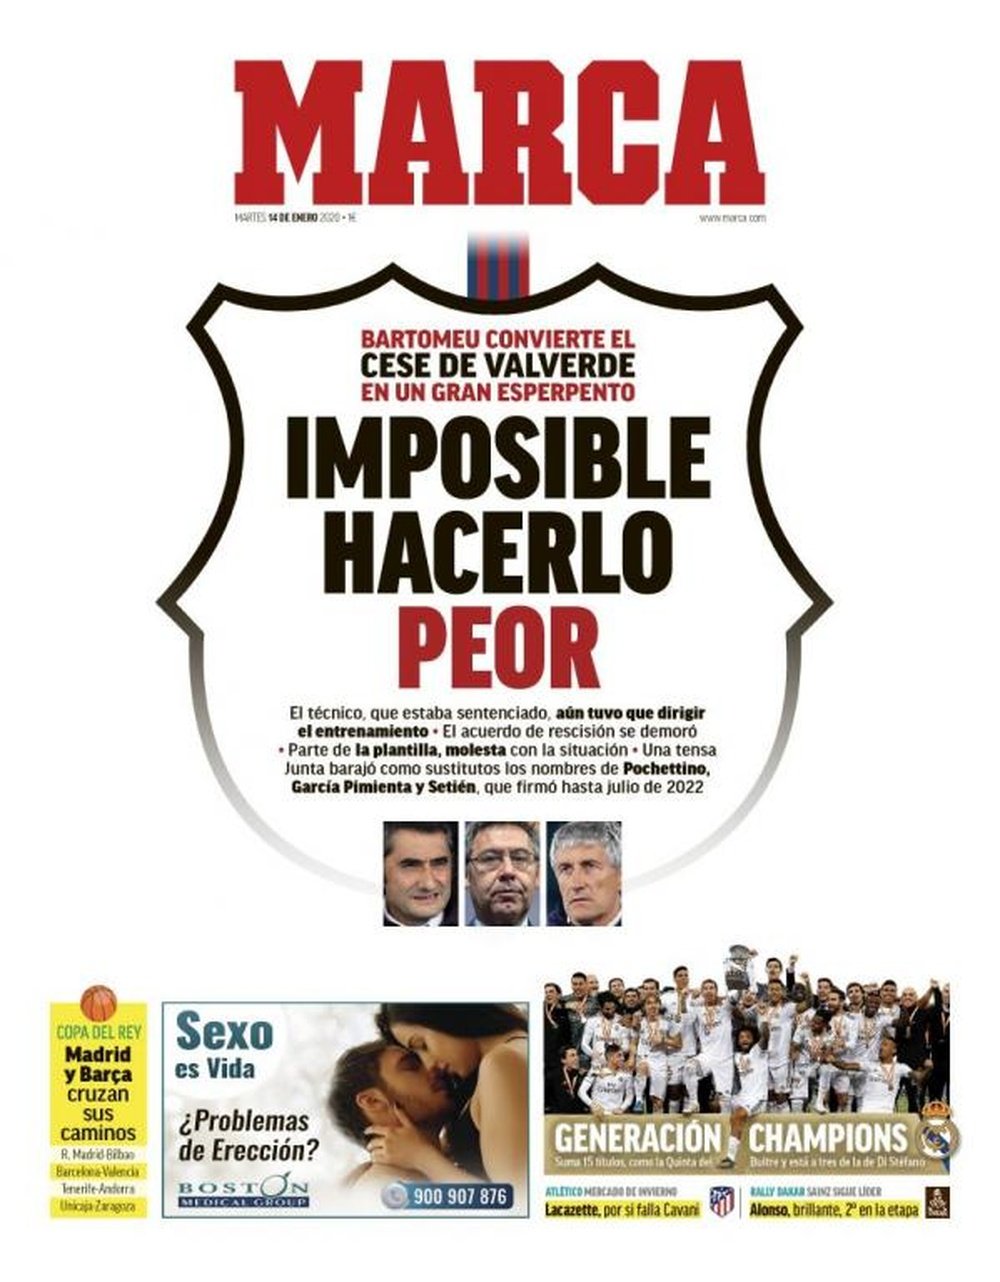 Les Unes des journaux sportifs en Espagne du 14 janvier 2020. Marca